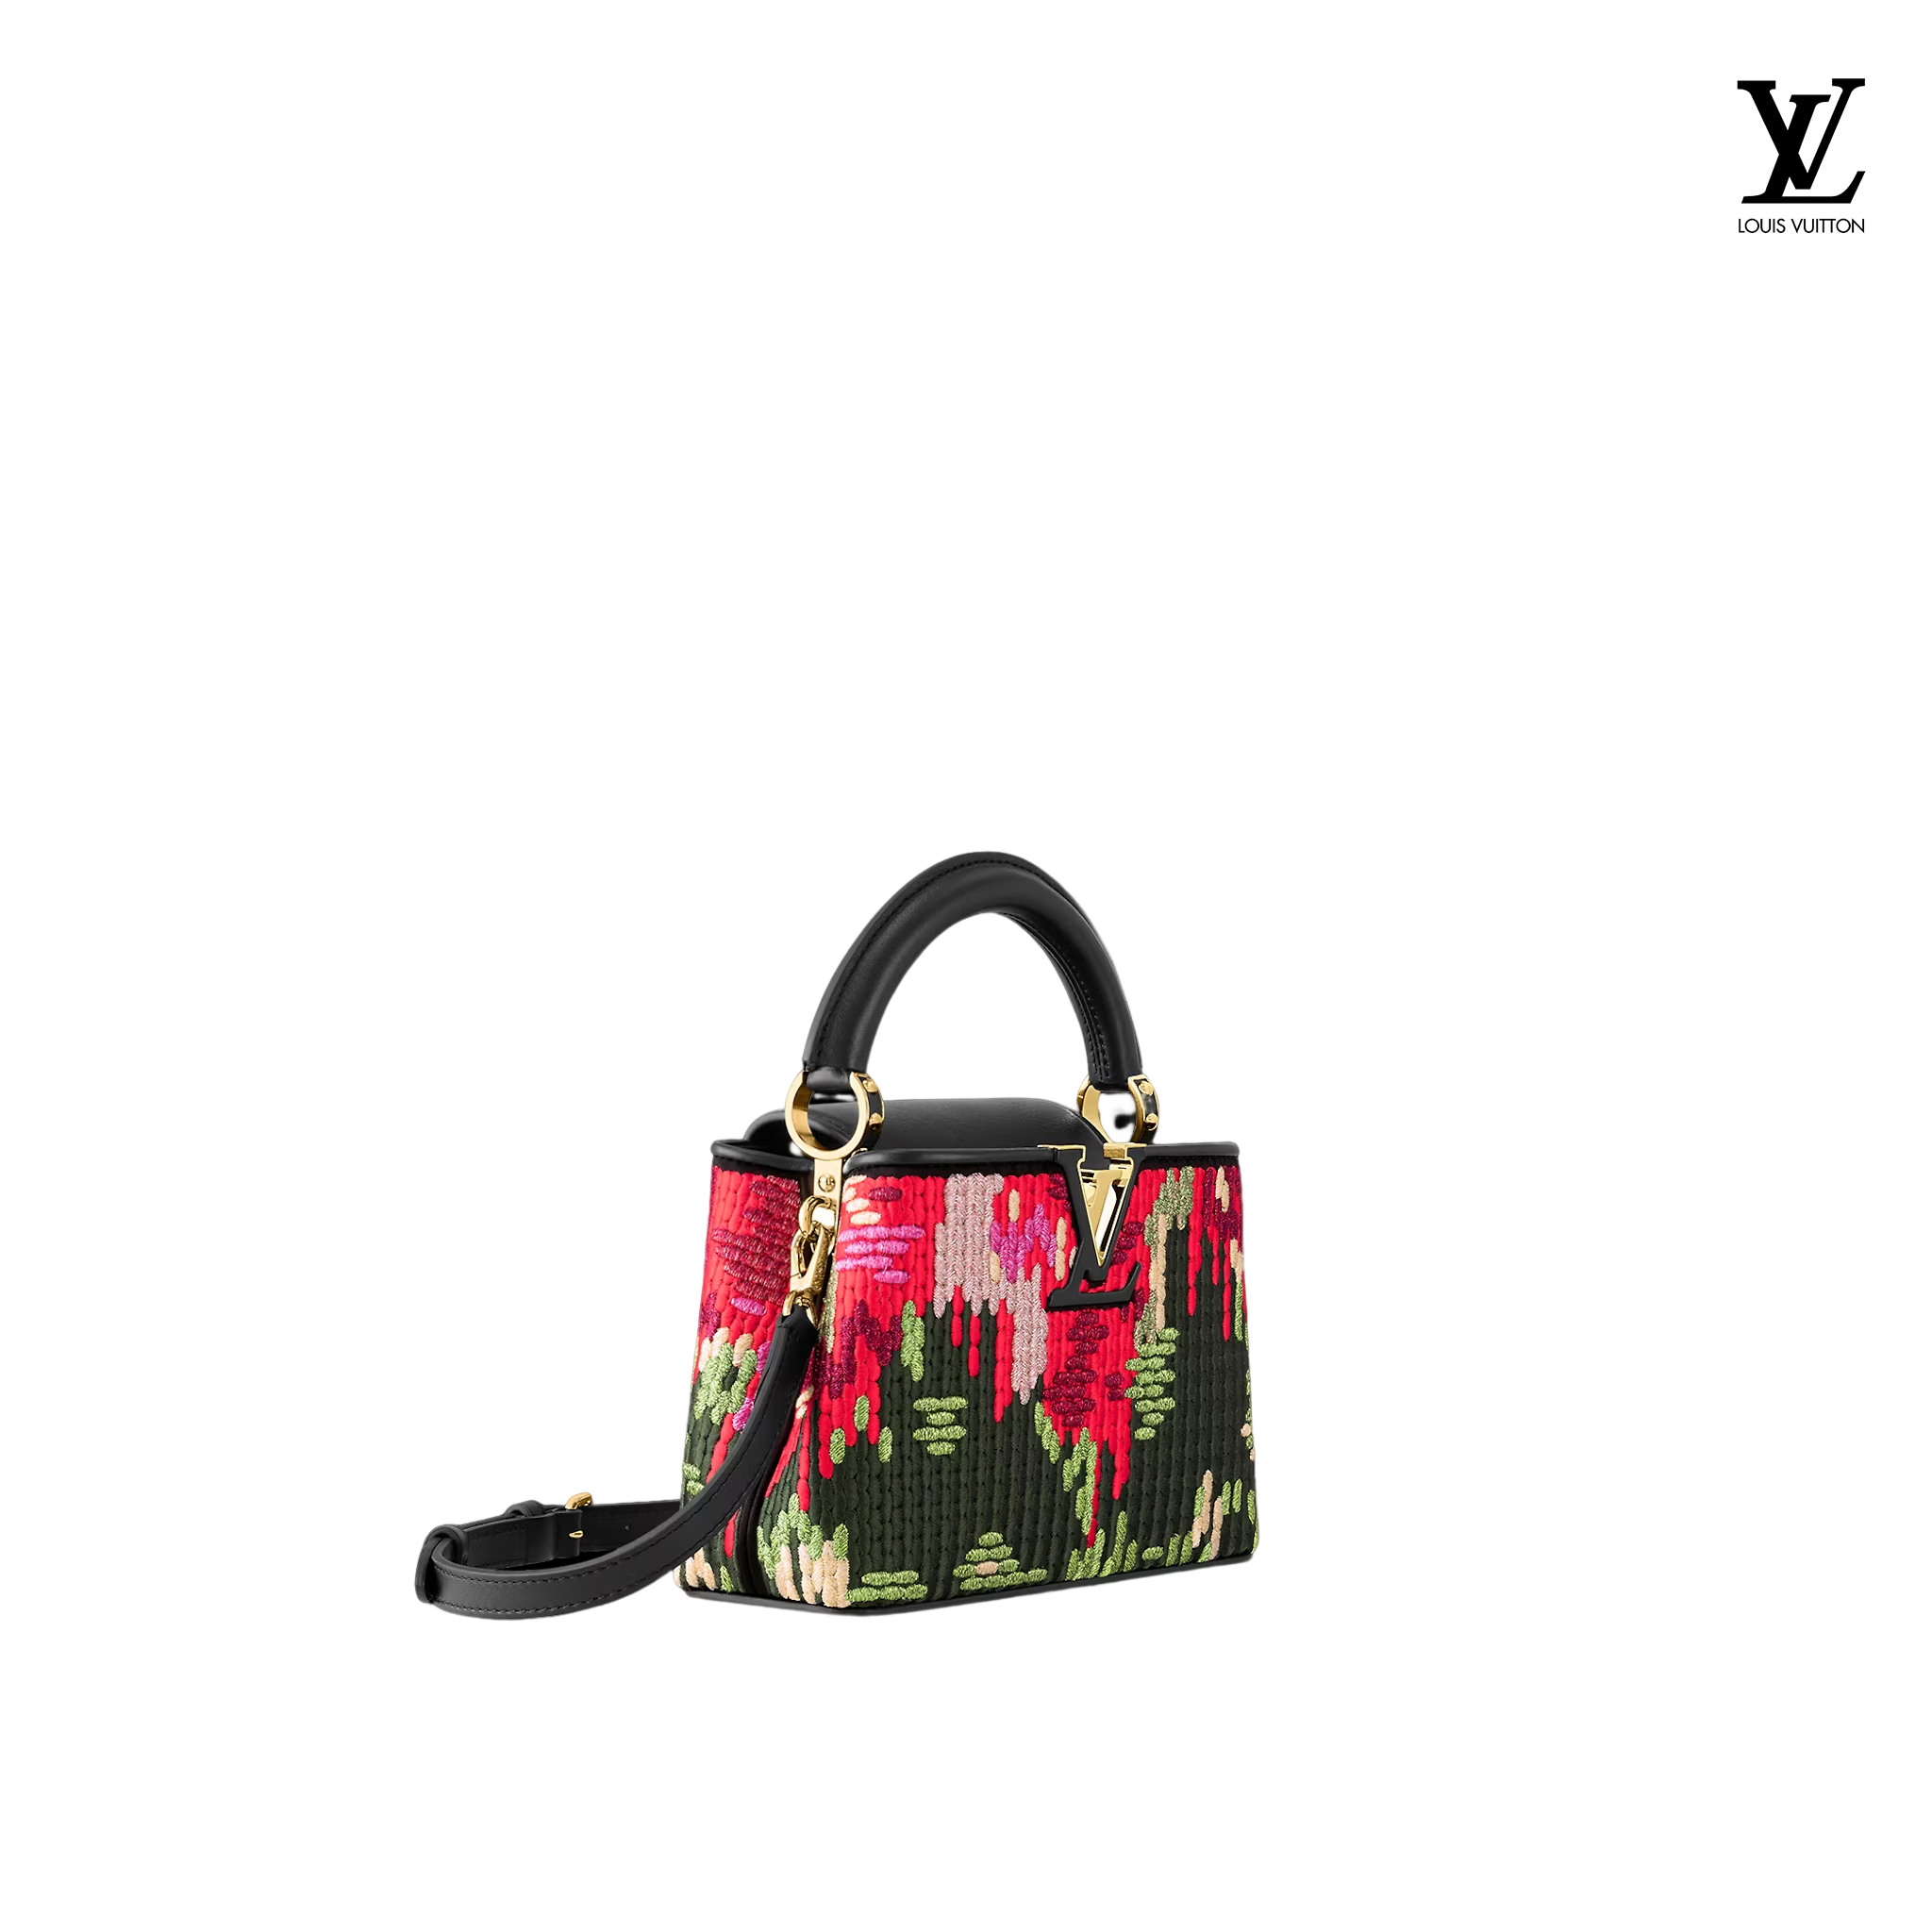 Louis Vuitton Capucines Mini handbags